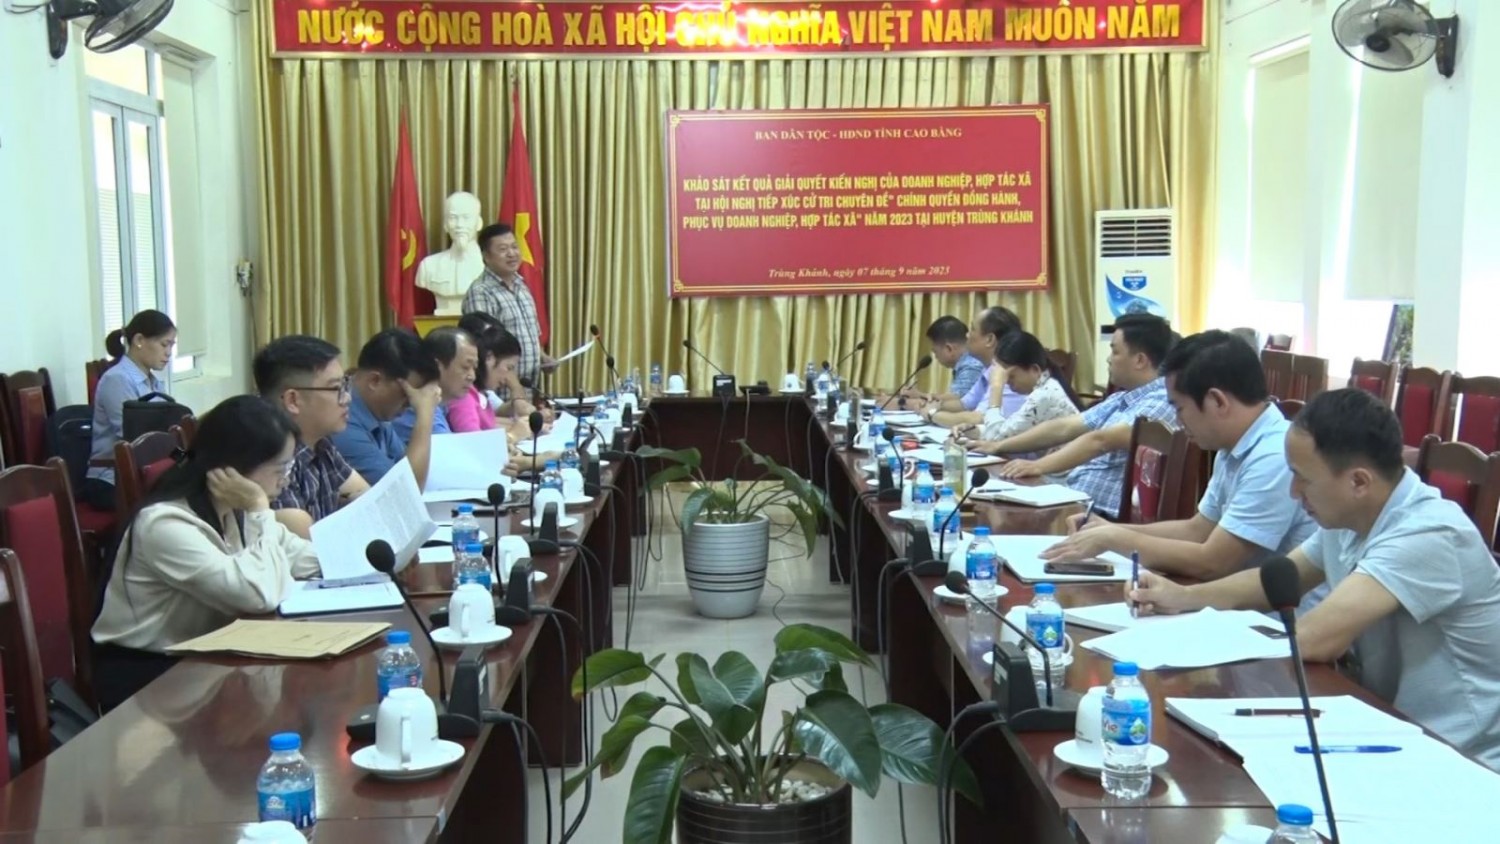 Đoàn Khảo sát làm việc tại UBND huyện Trùng Khánh